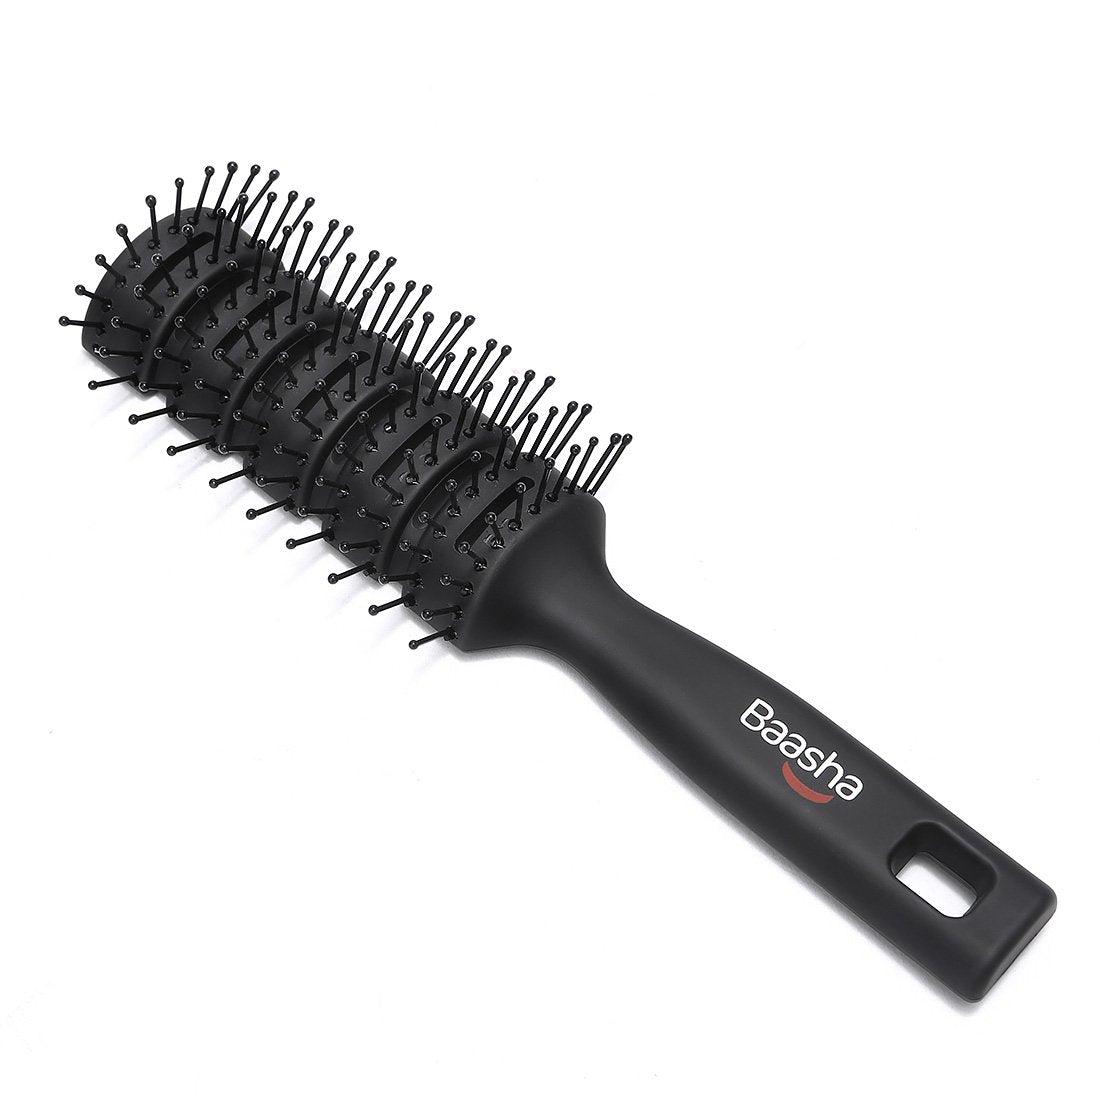 Une brosse aérée utilisée en coiffure